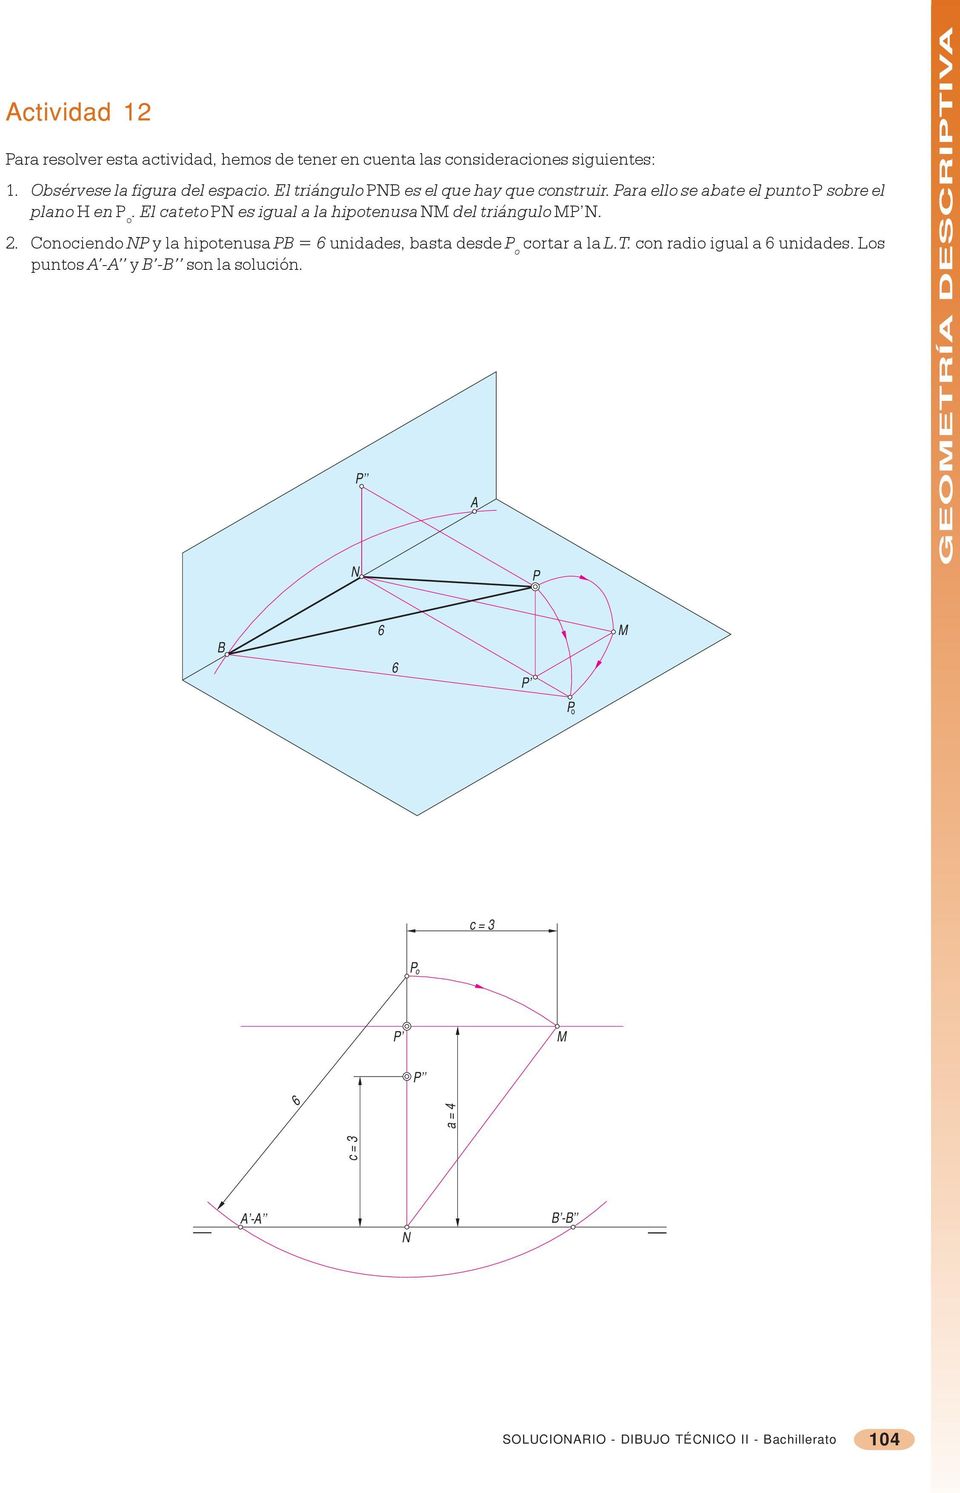 El cateto PN e igual a la ipotenua NM del tiángulo MN.. Conociendo NP y la ipotenua PB = 6 unidade, bata dede P o cota a la L.